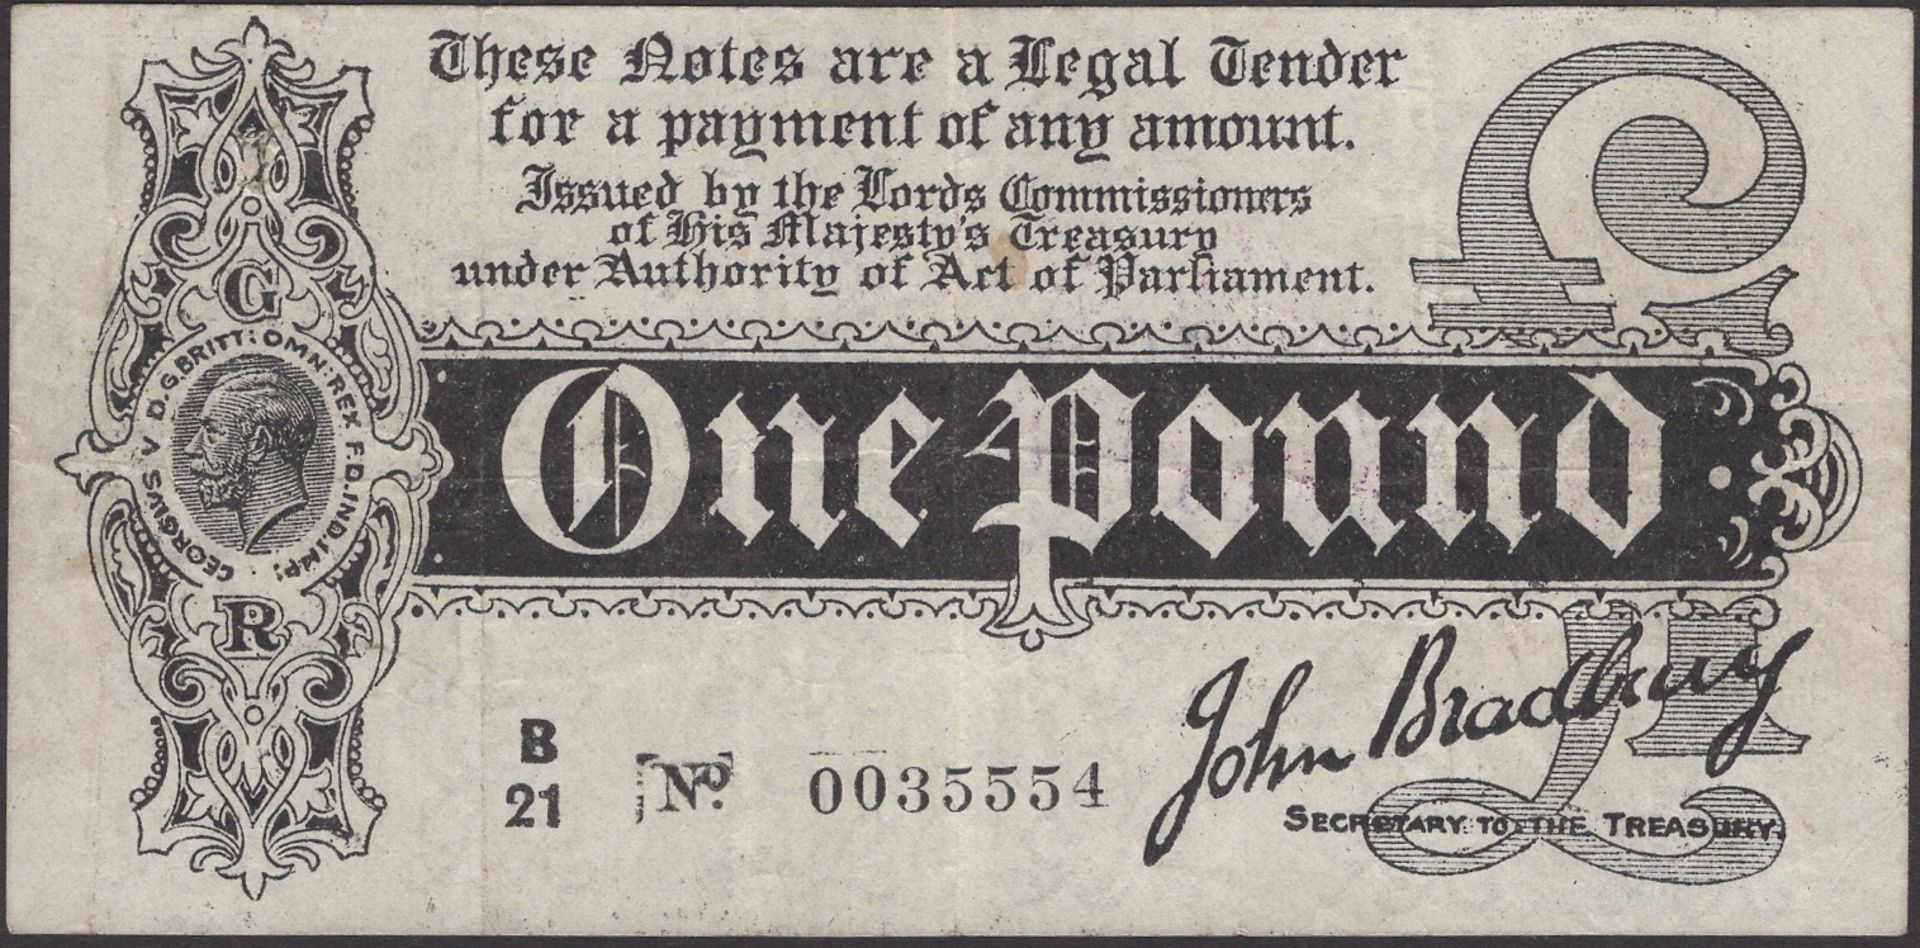 Treasury Series, John Bradbury, Â£1, 7 August 1914, serial number B/21 0035554, with smaller...